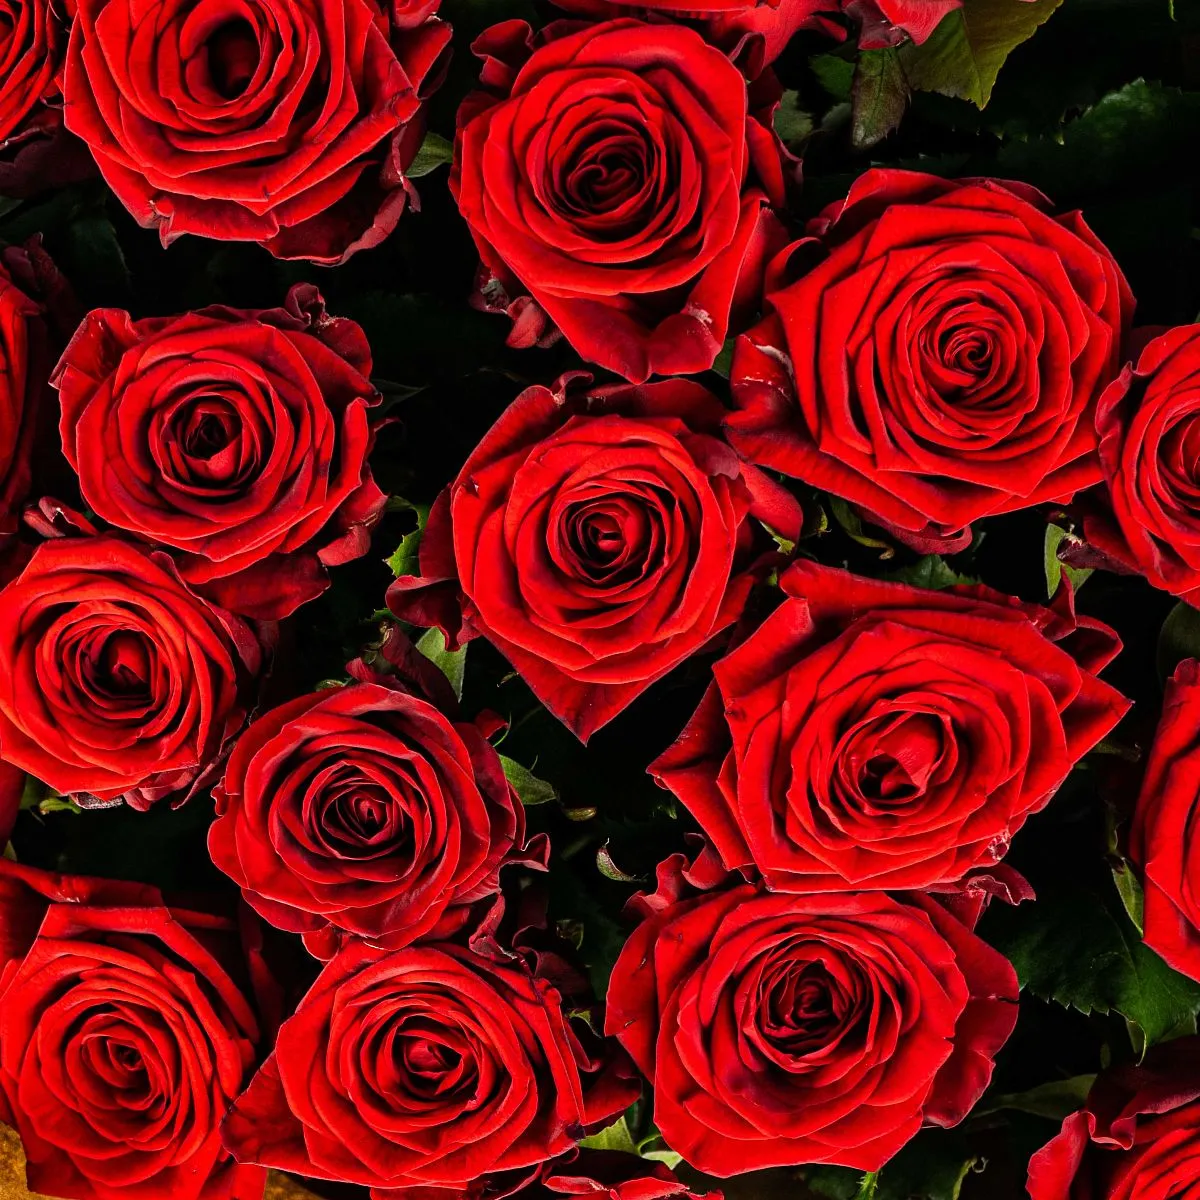 21 красная роза (50 см)